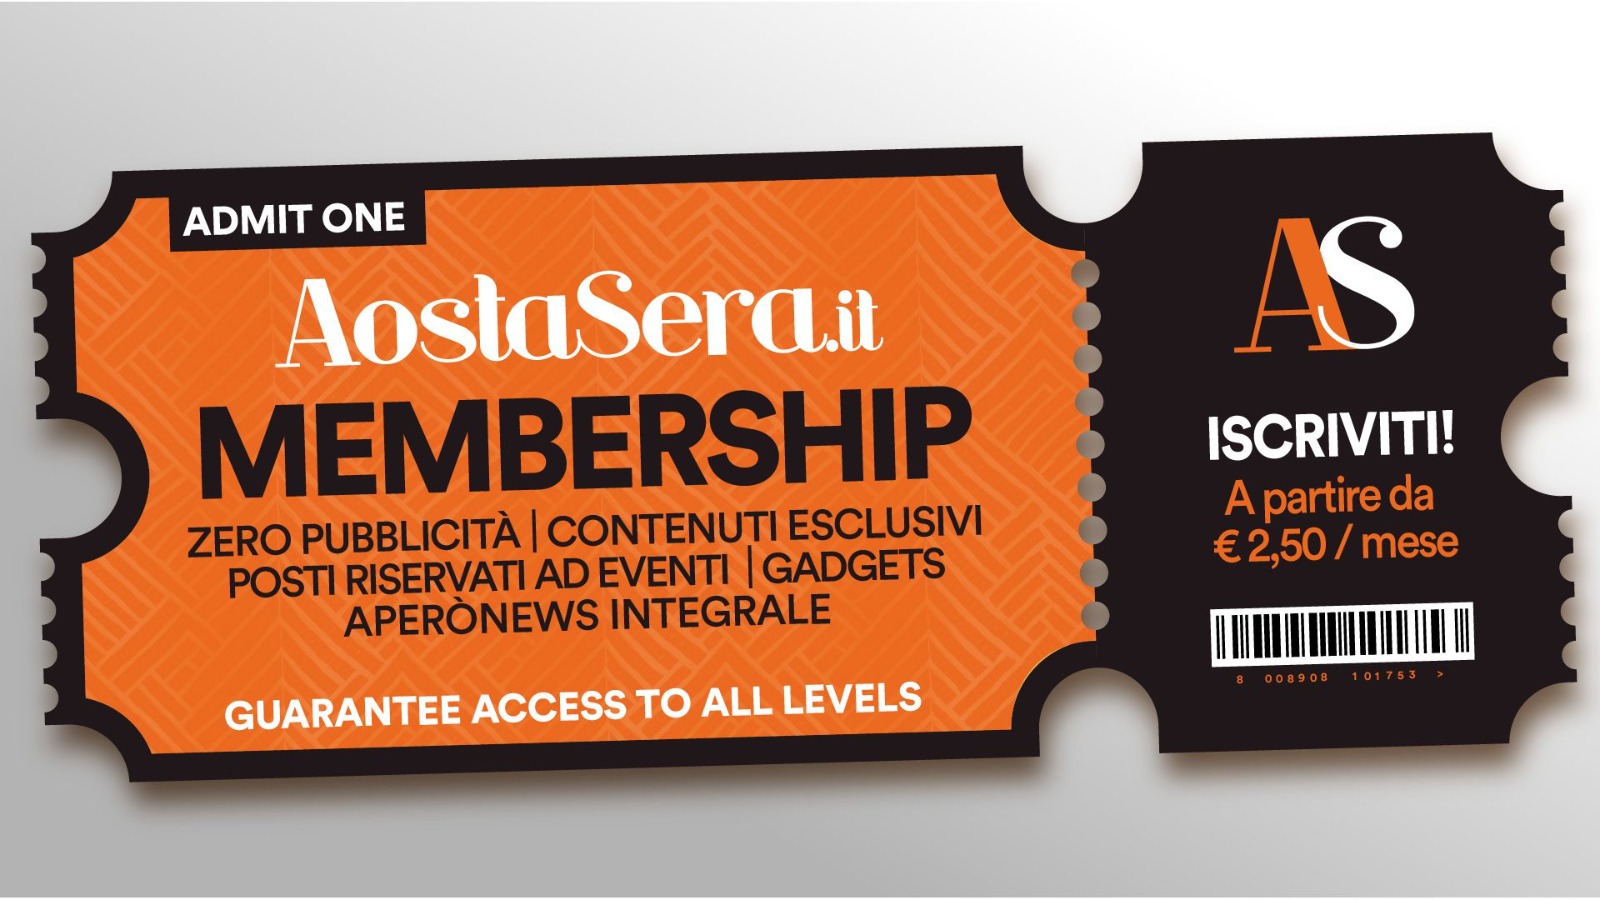 Membership AostaSera